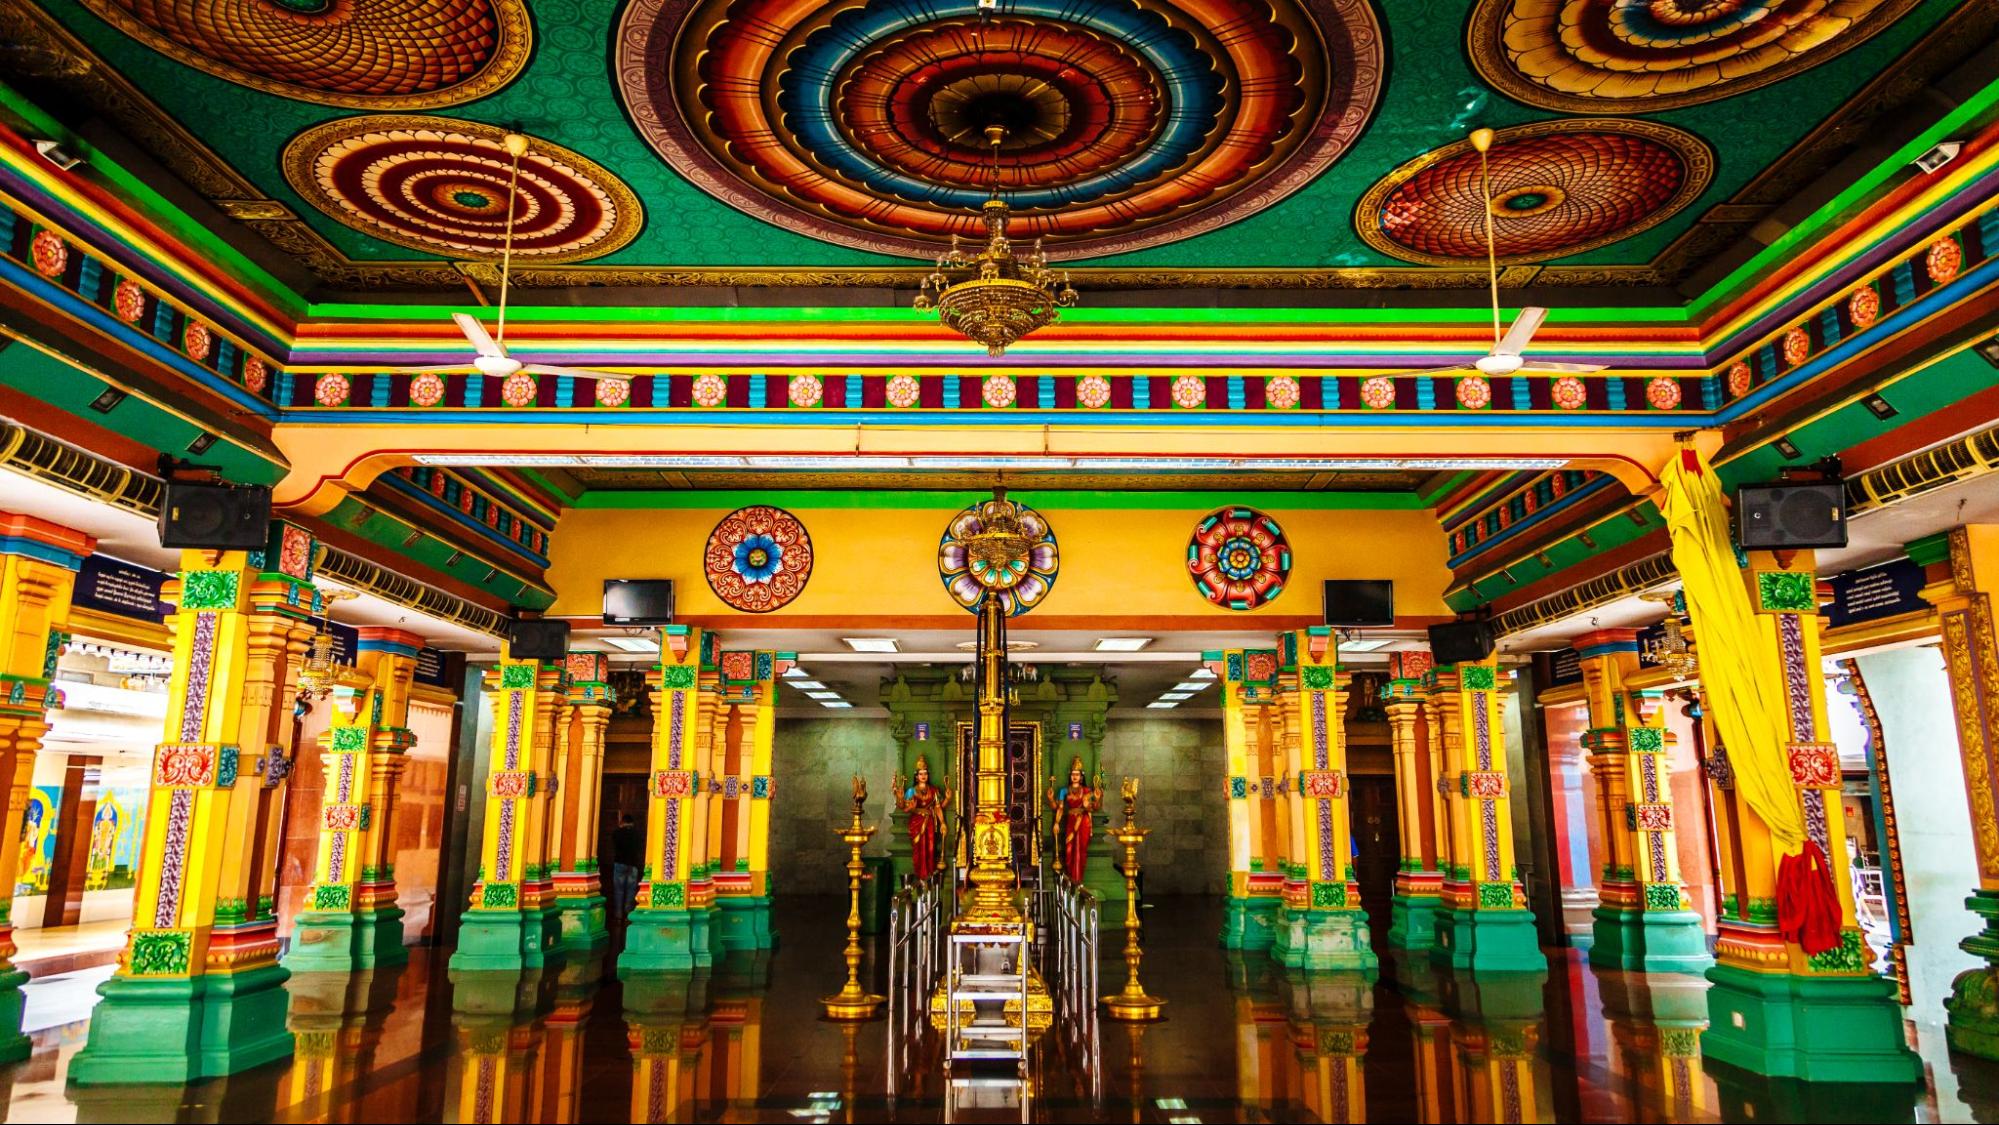 Indian temple interior design